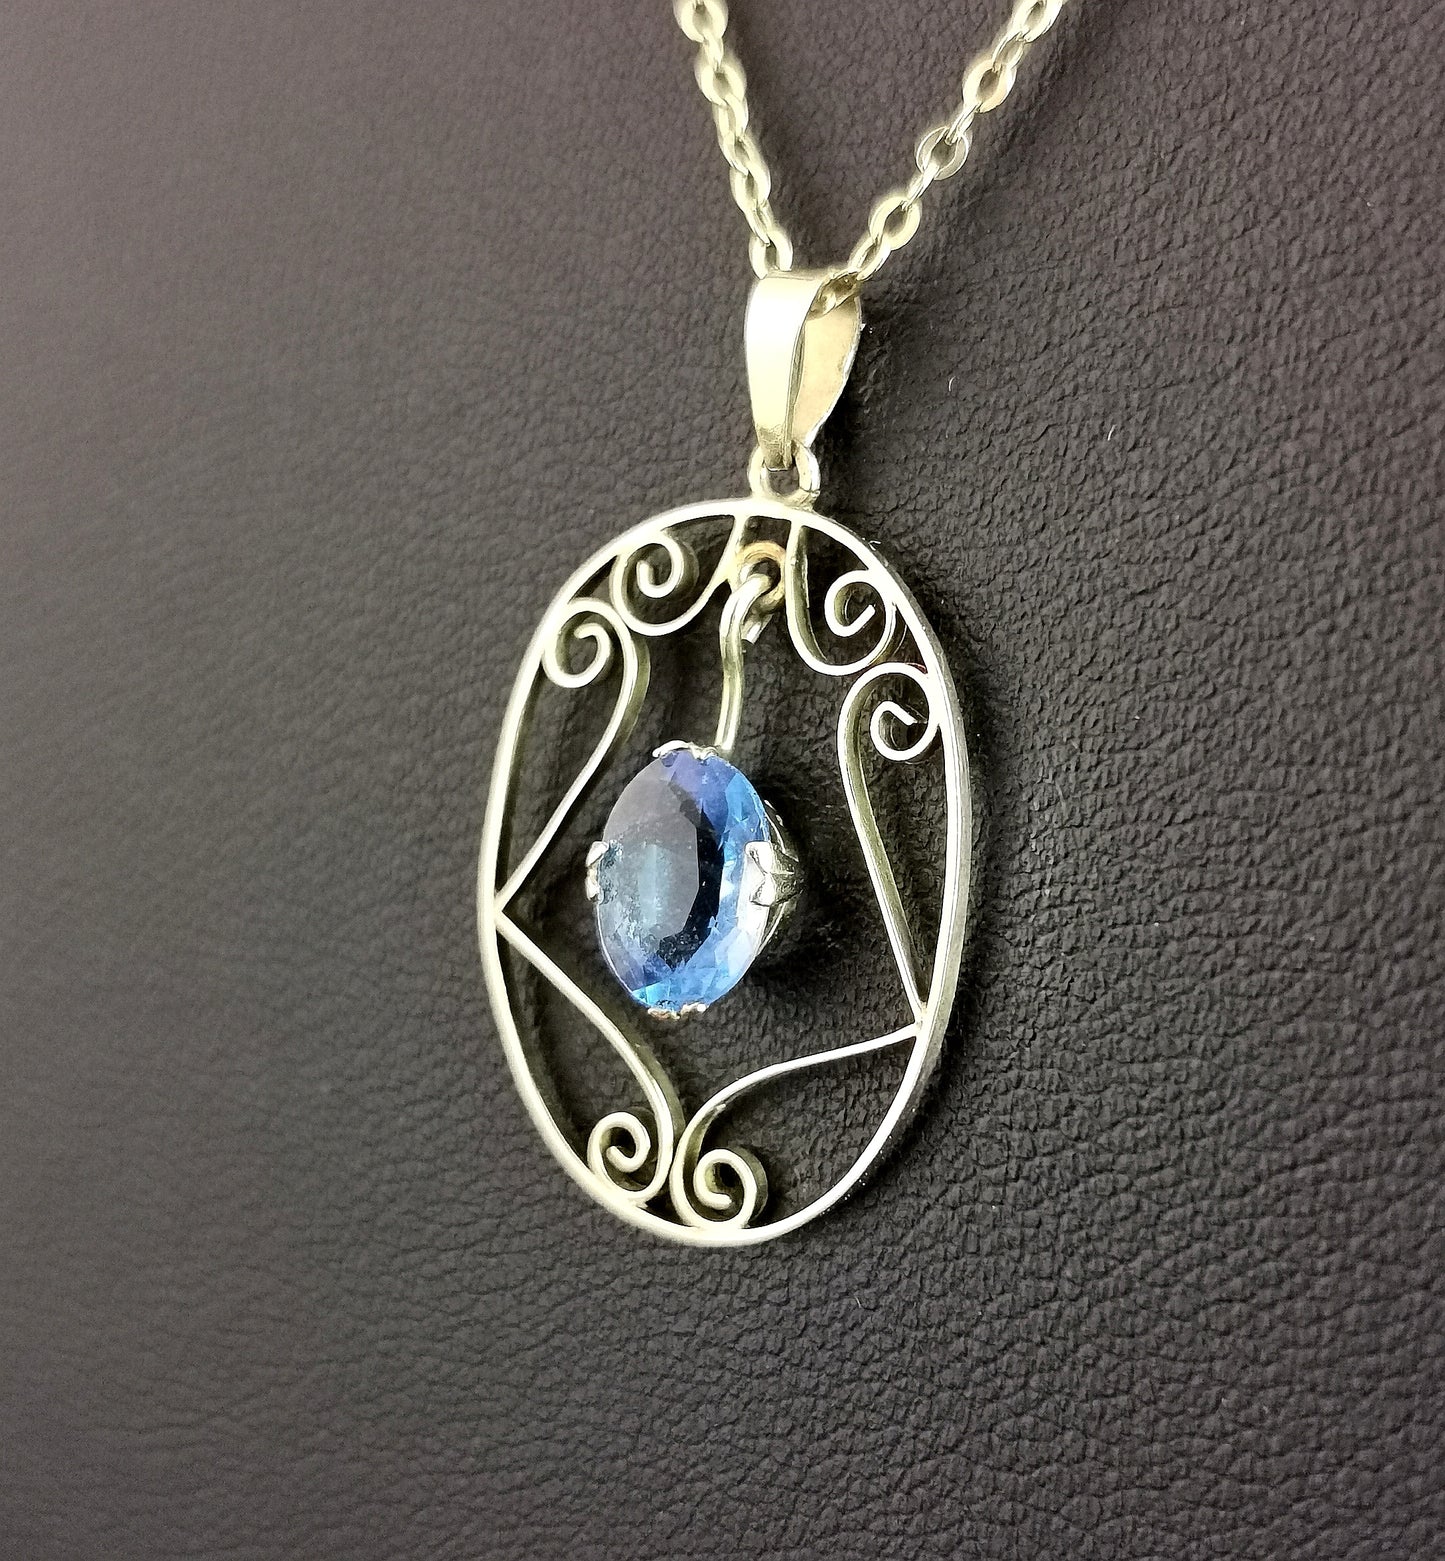 Antique Art Nouveau Blue paste pendant necklace, 9ct gold